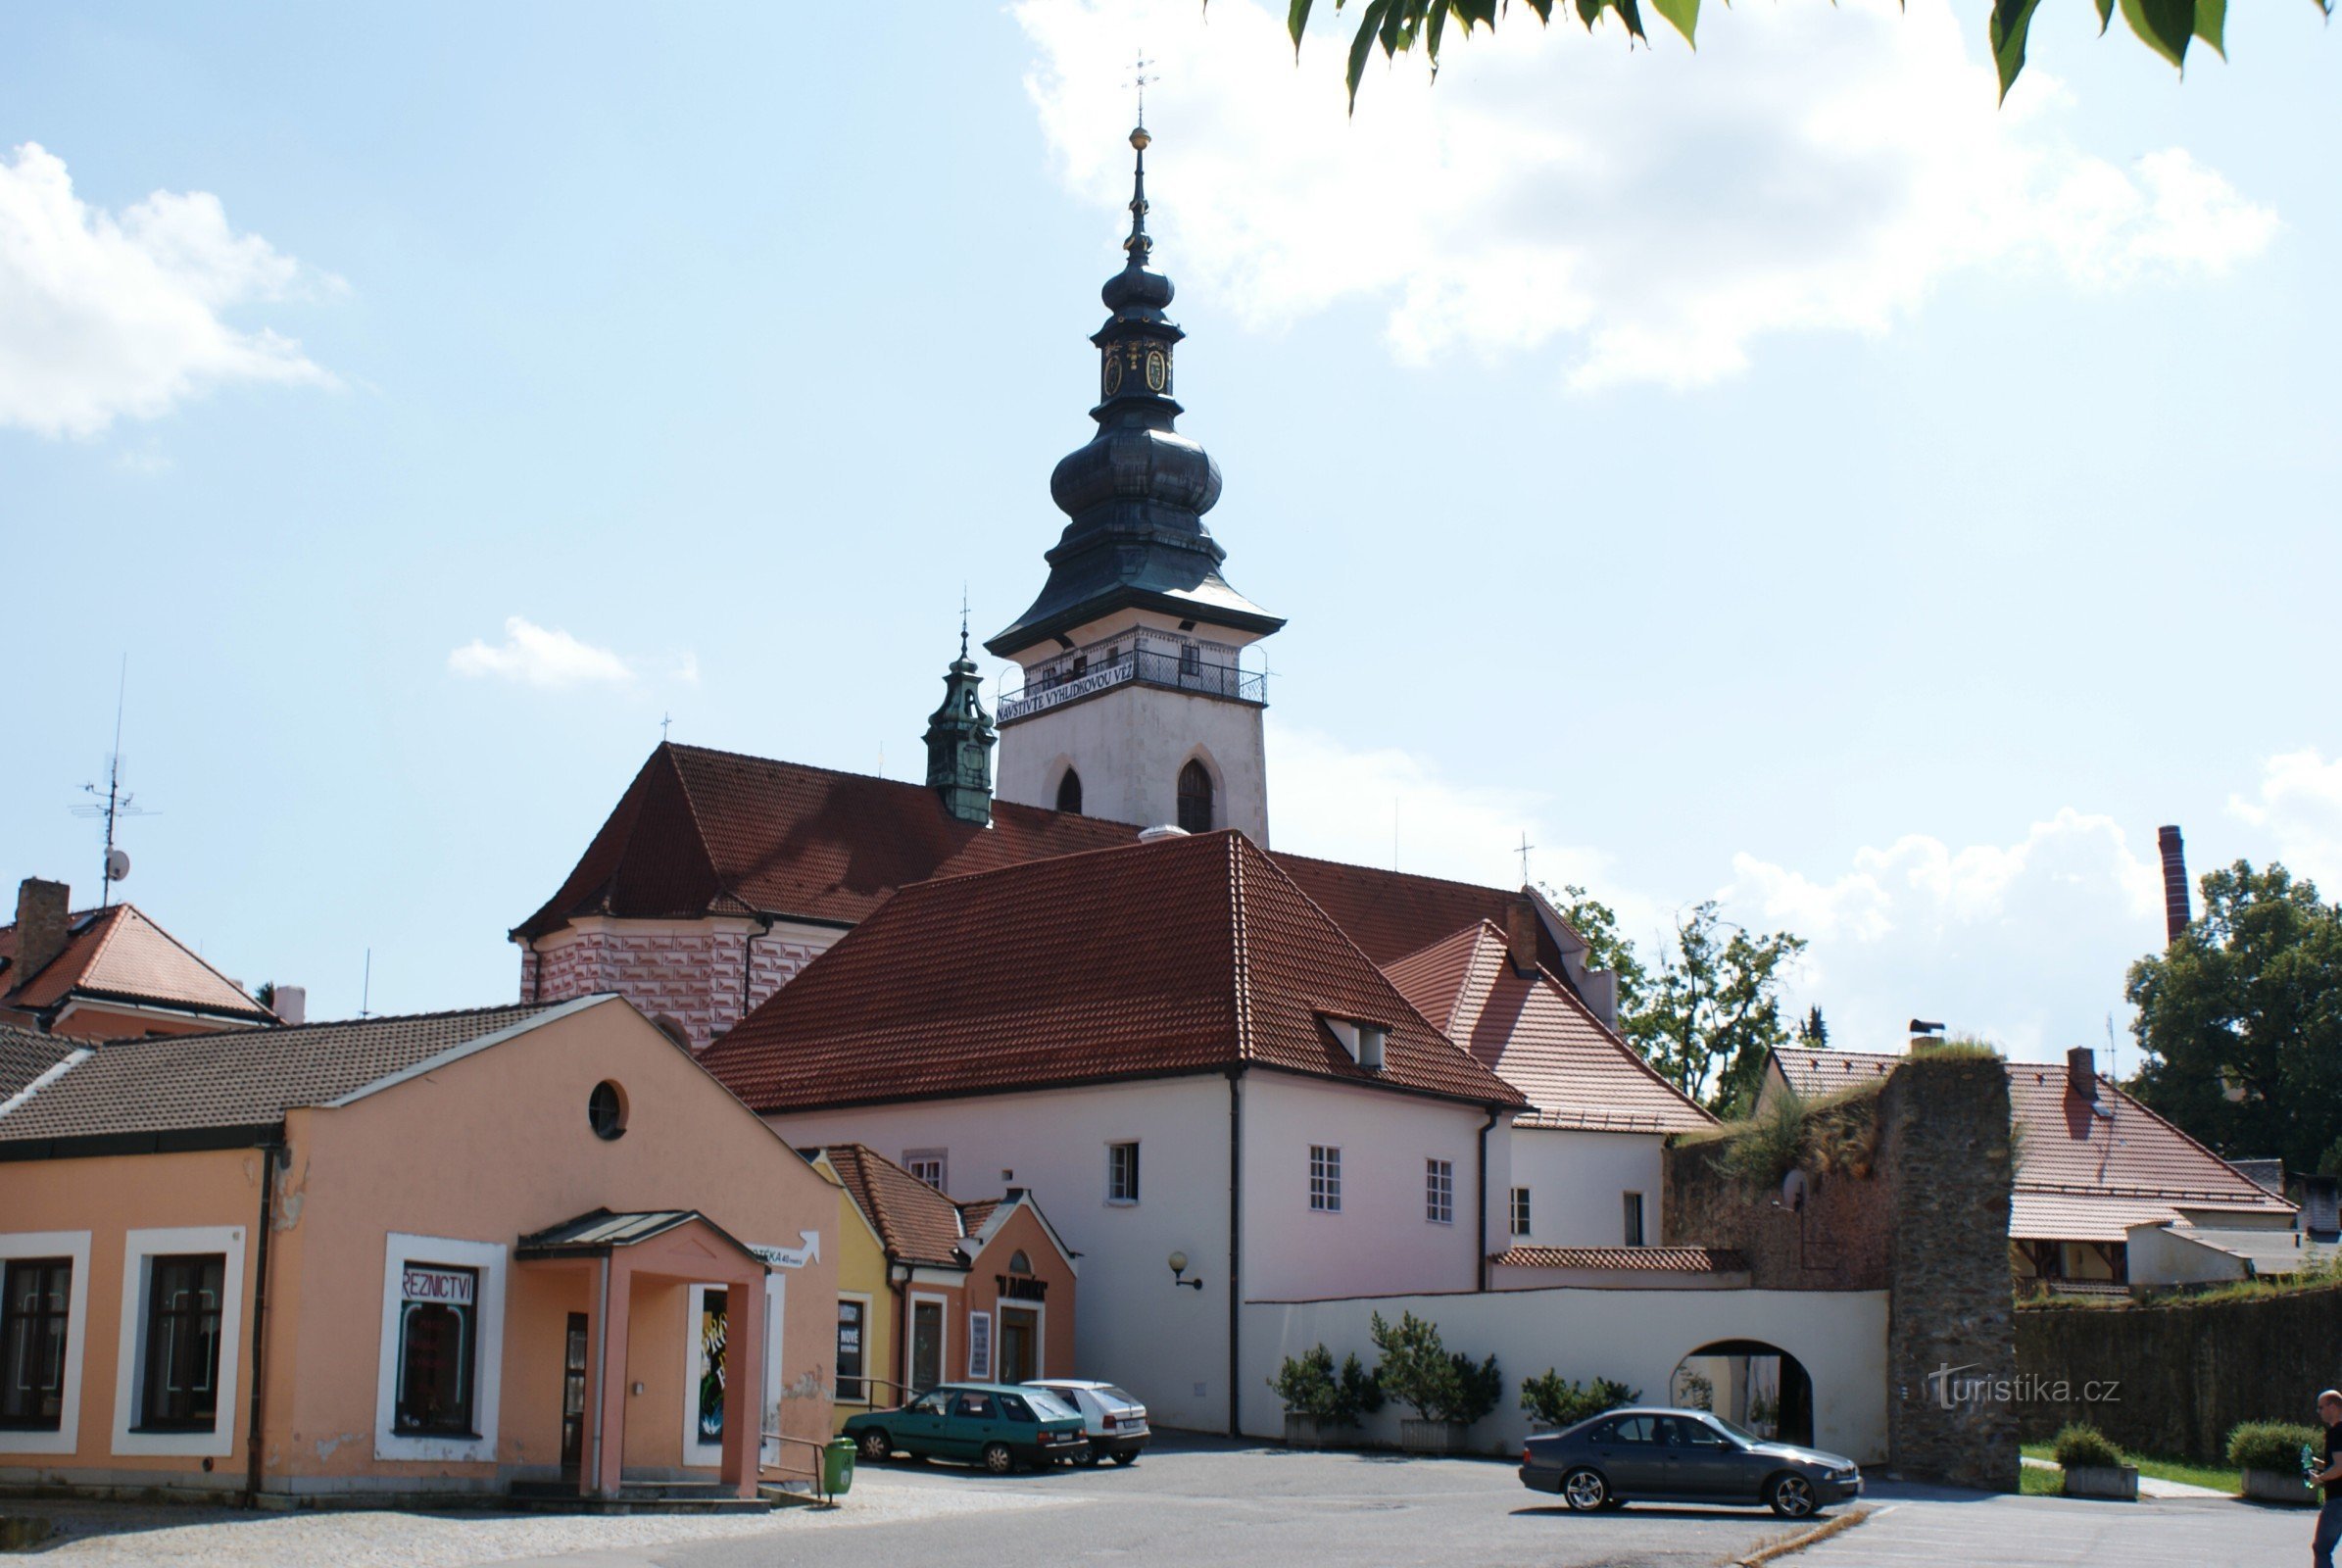 Pelhřimov – Basilikaen St. Bartholomew med et udsigtstårn